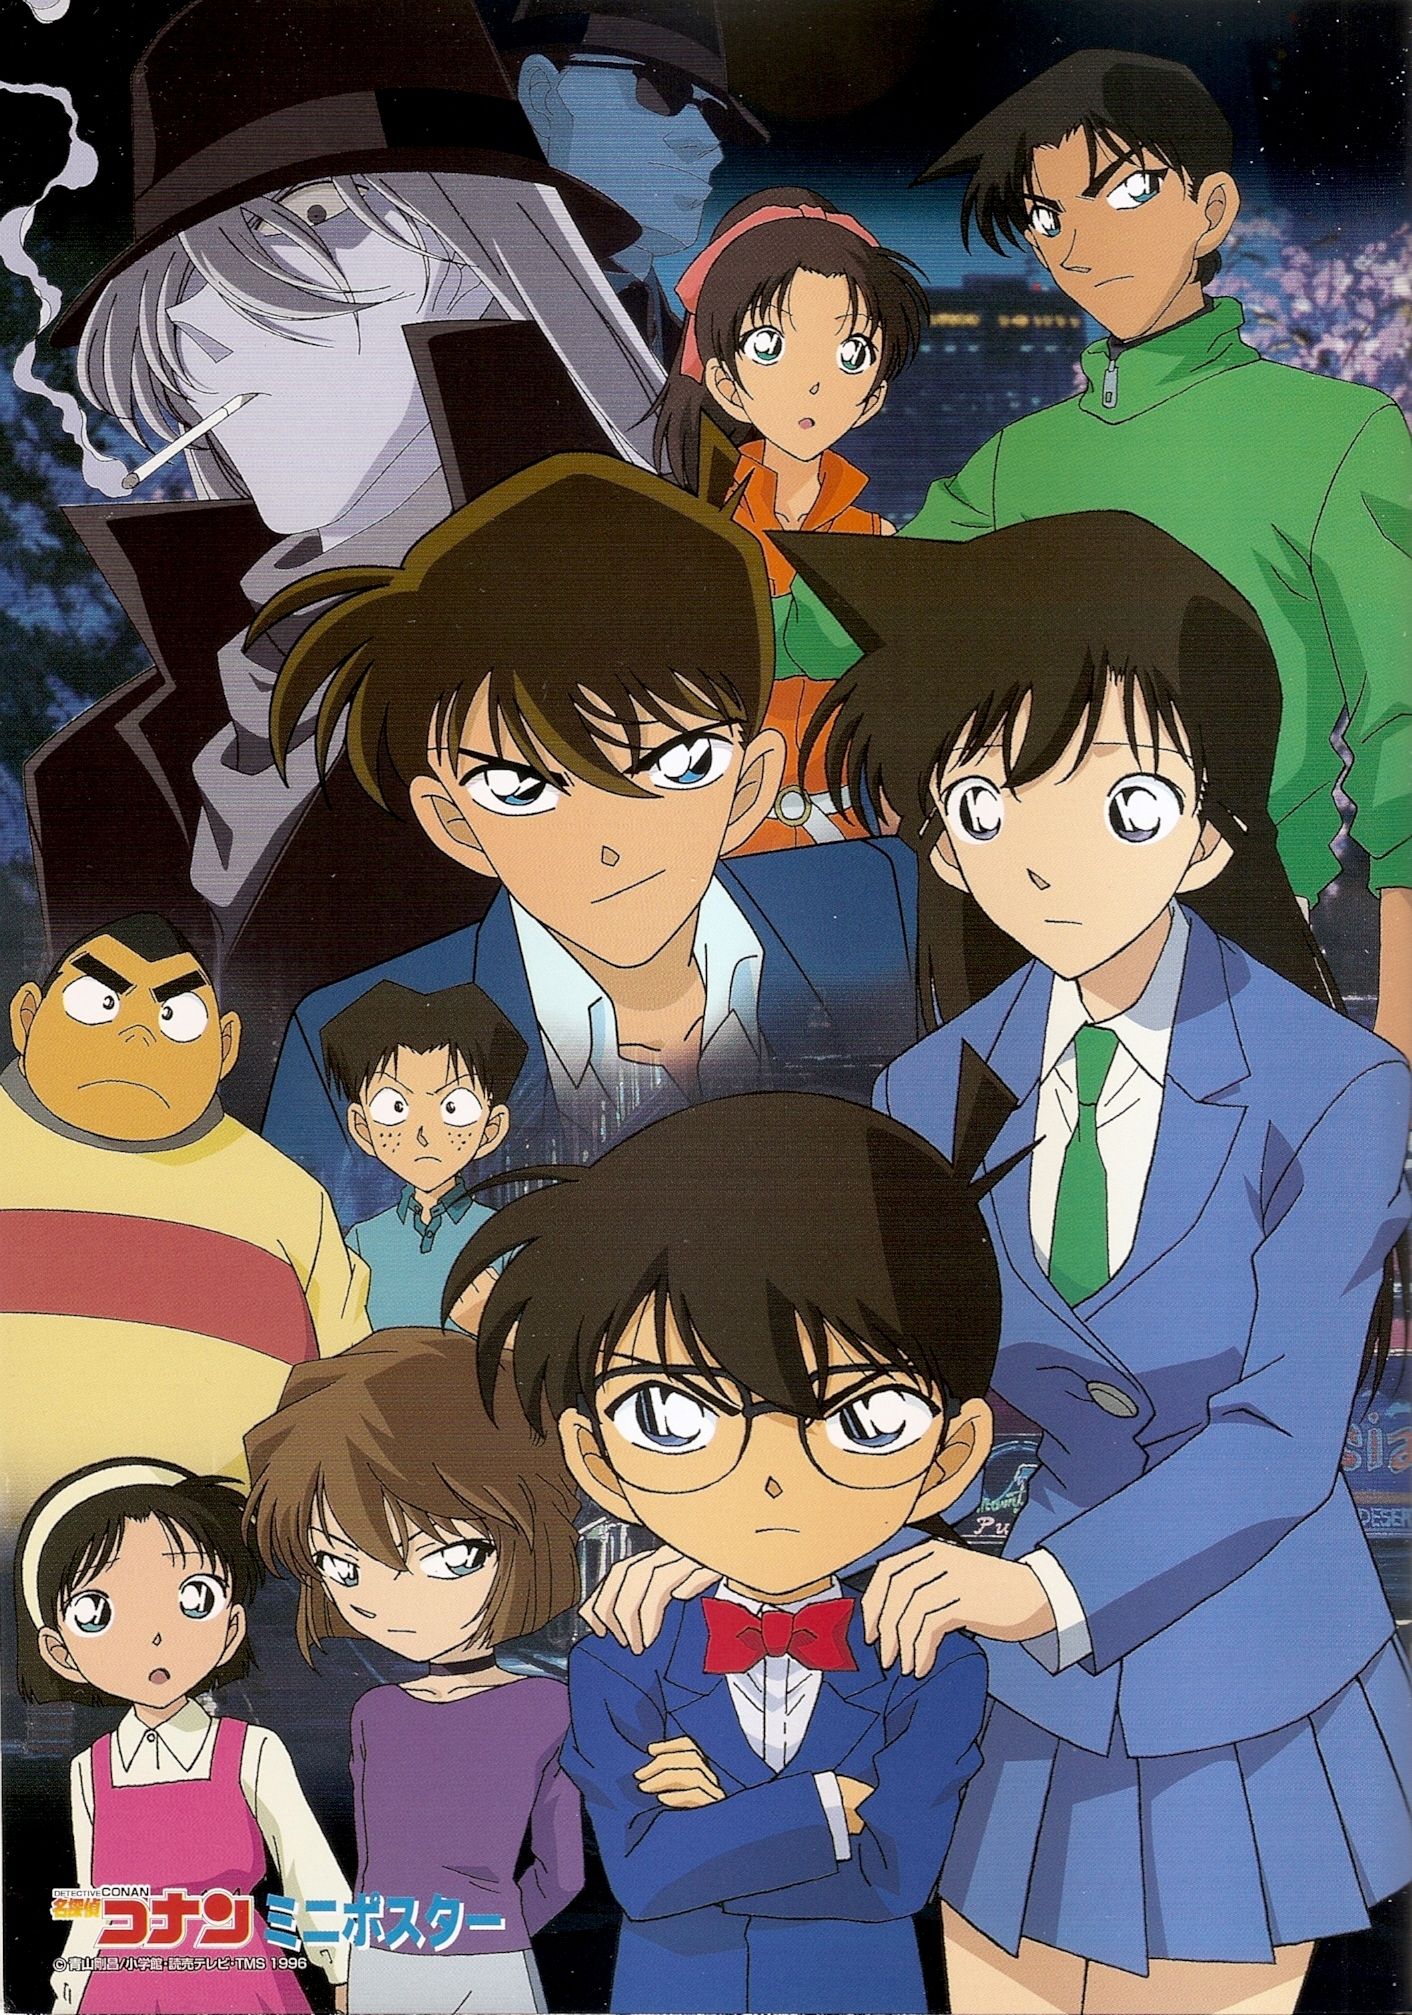 Kuro no Soshiki (Black Organization) Conan Anime Image Board